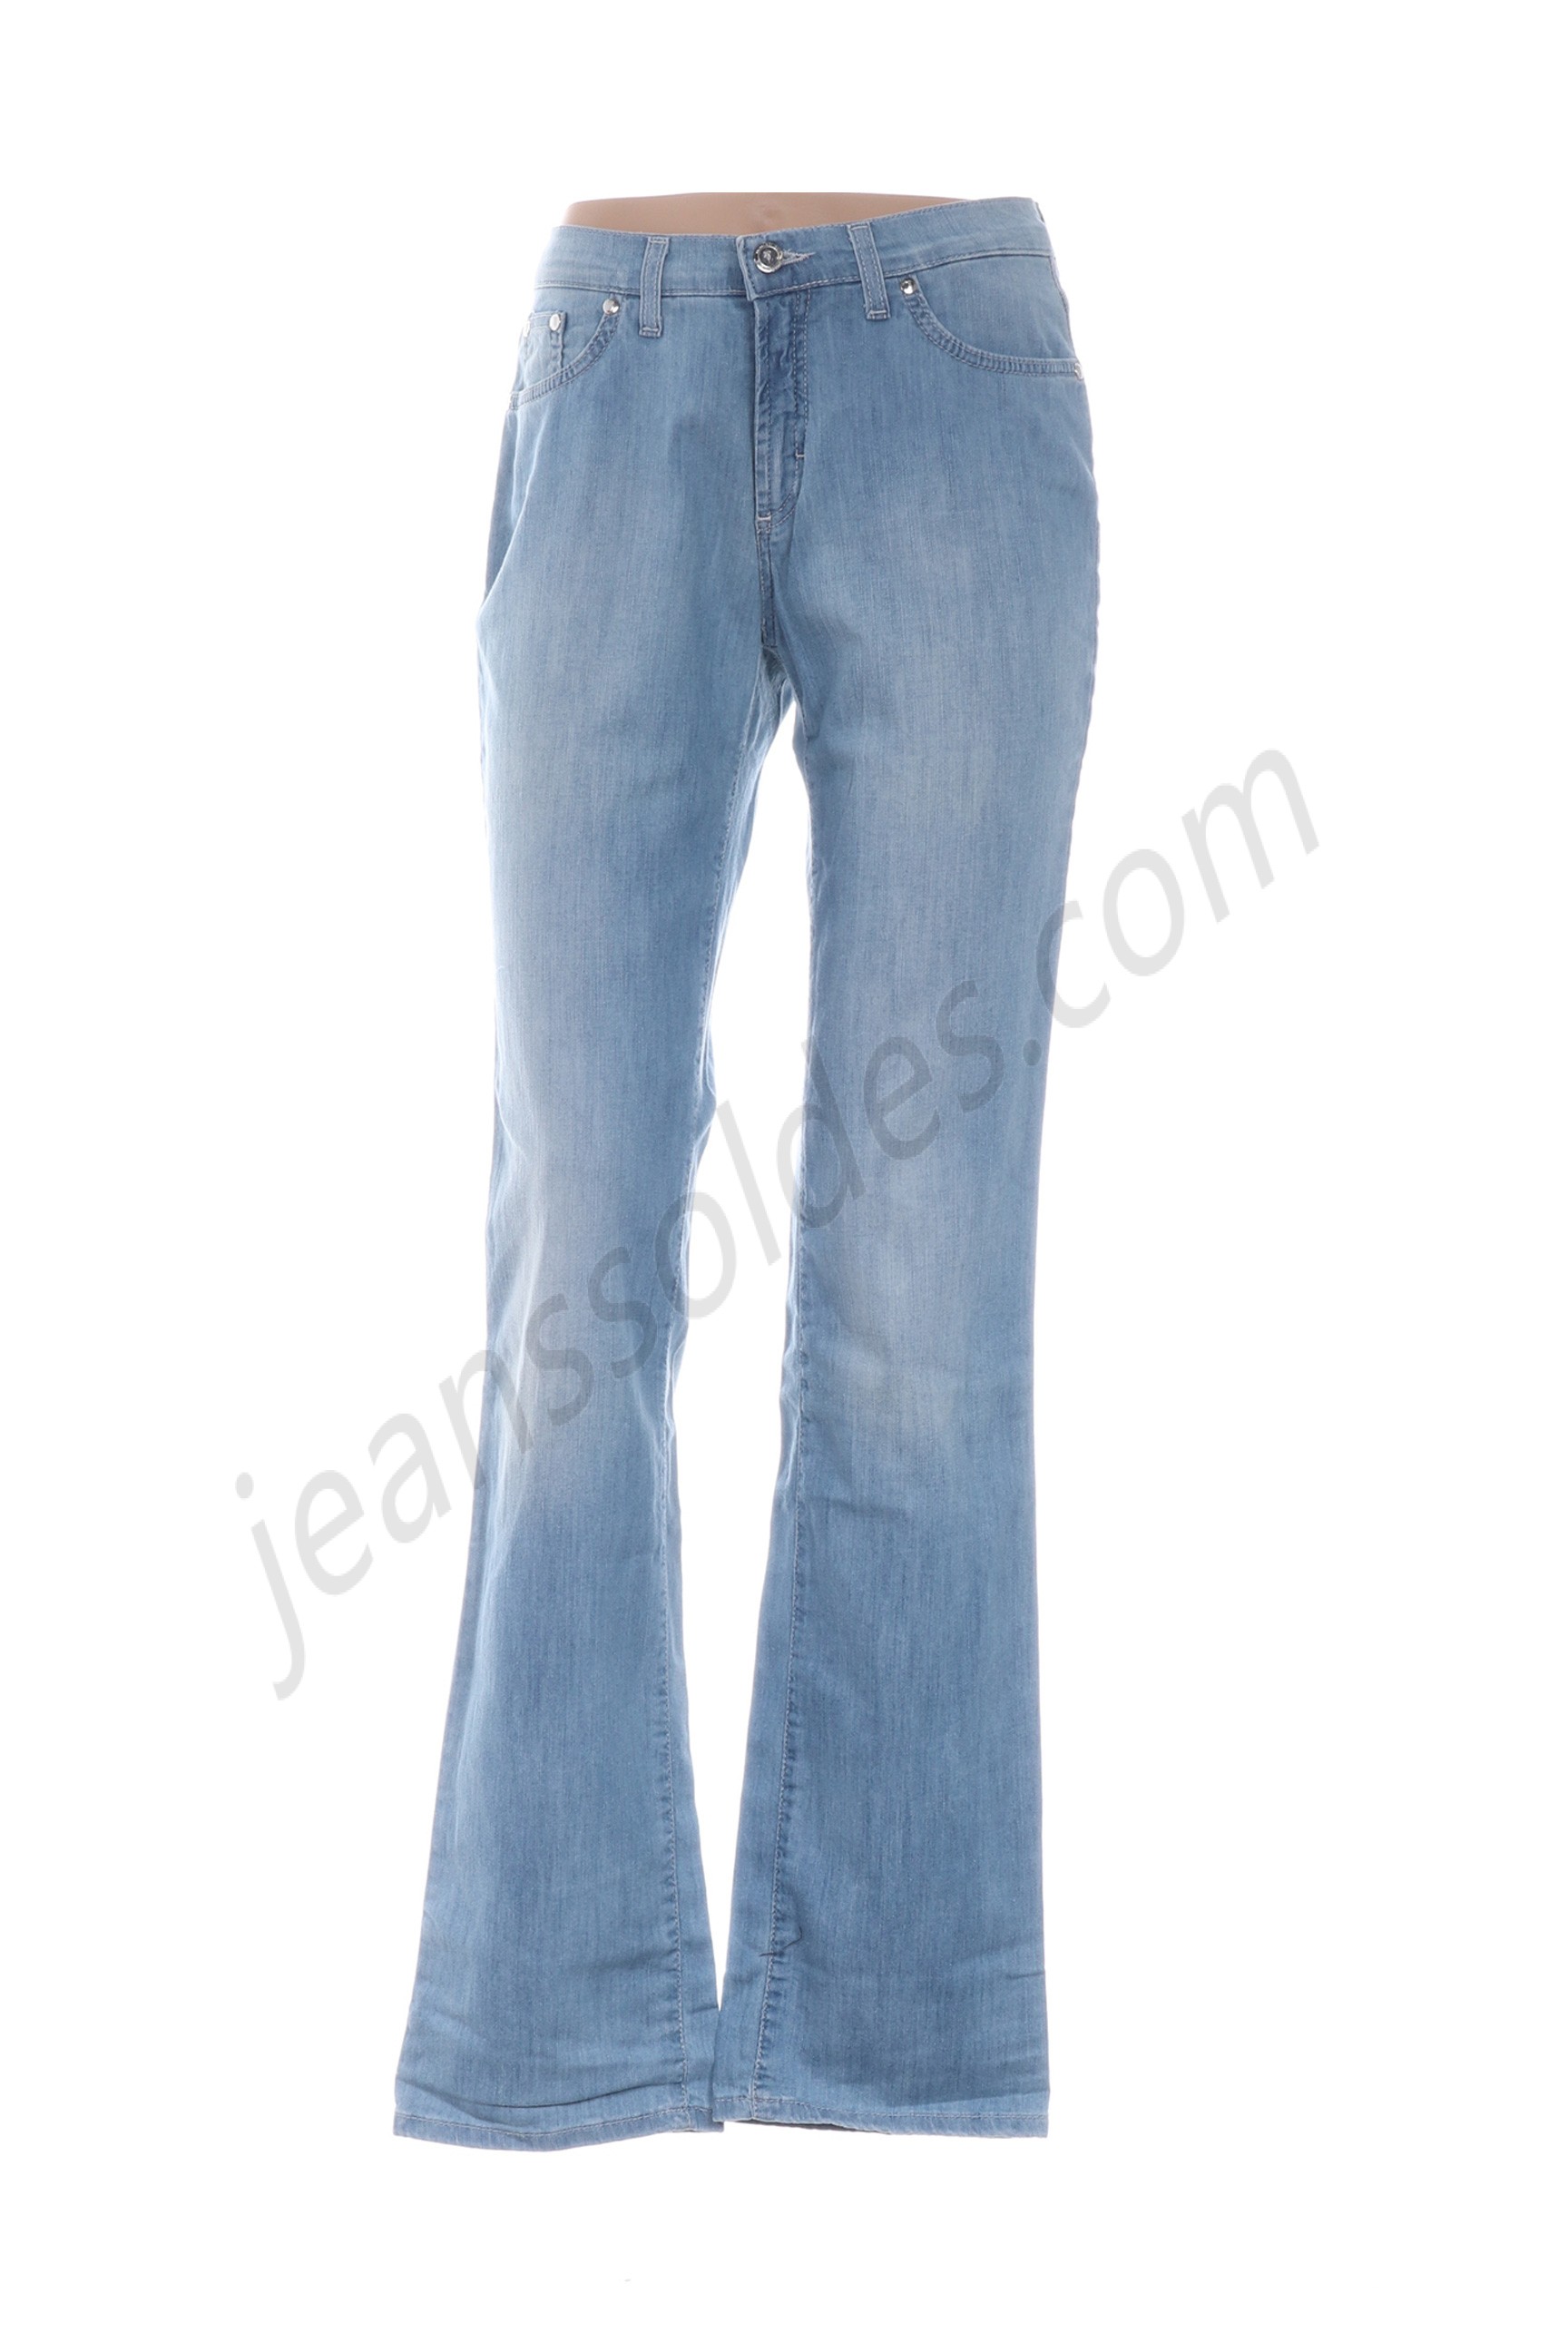 trussardi jeans-Jeans coupe droite prix d’amis - trussardi jeans-Jeans coupe droite prix d’amis